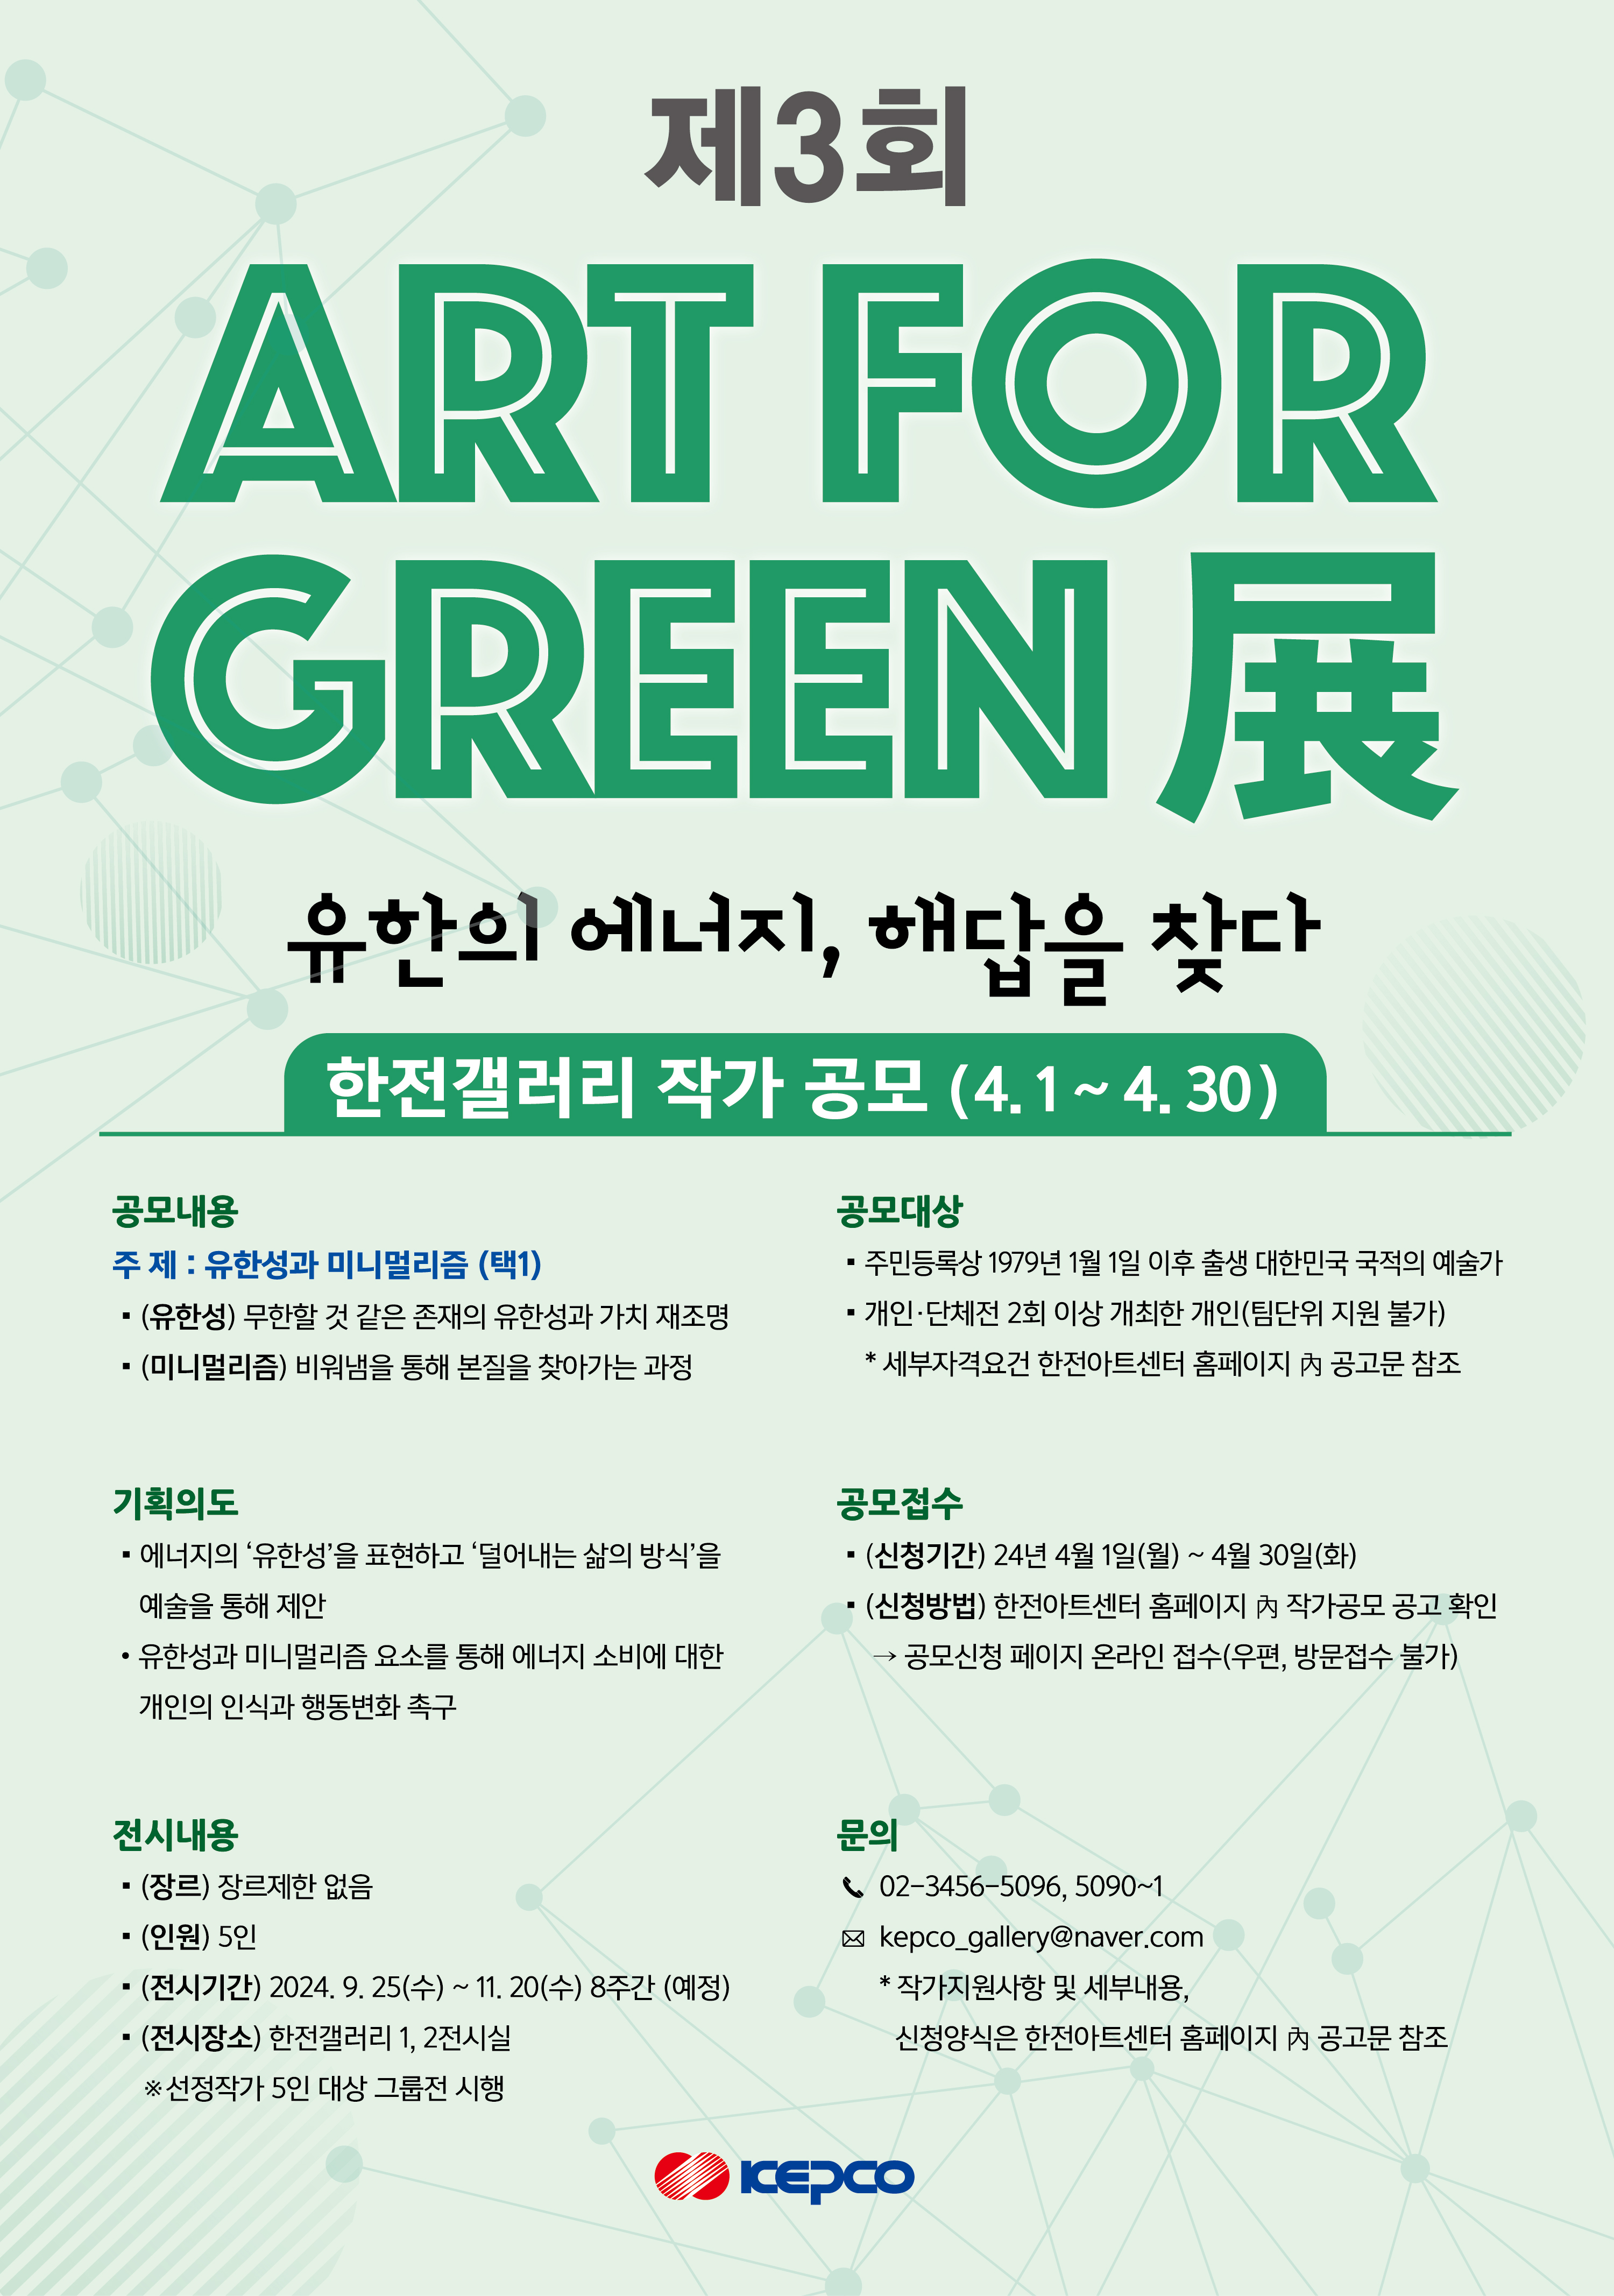 제3회 ART FOR GREEN 展 유한의 에너지, 해답을 찾다 한전갤러리 작가 공모 4.1~4.30